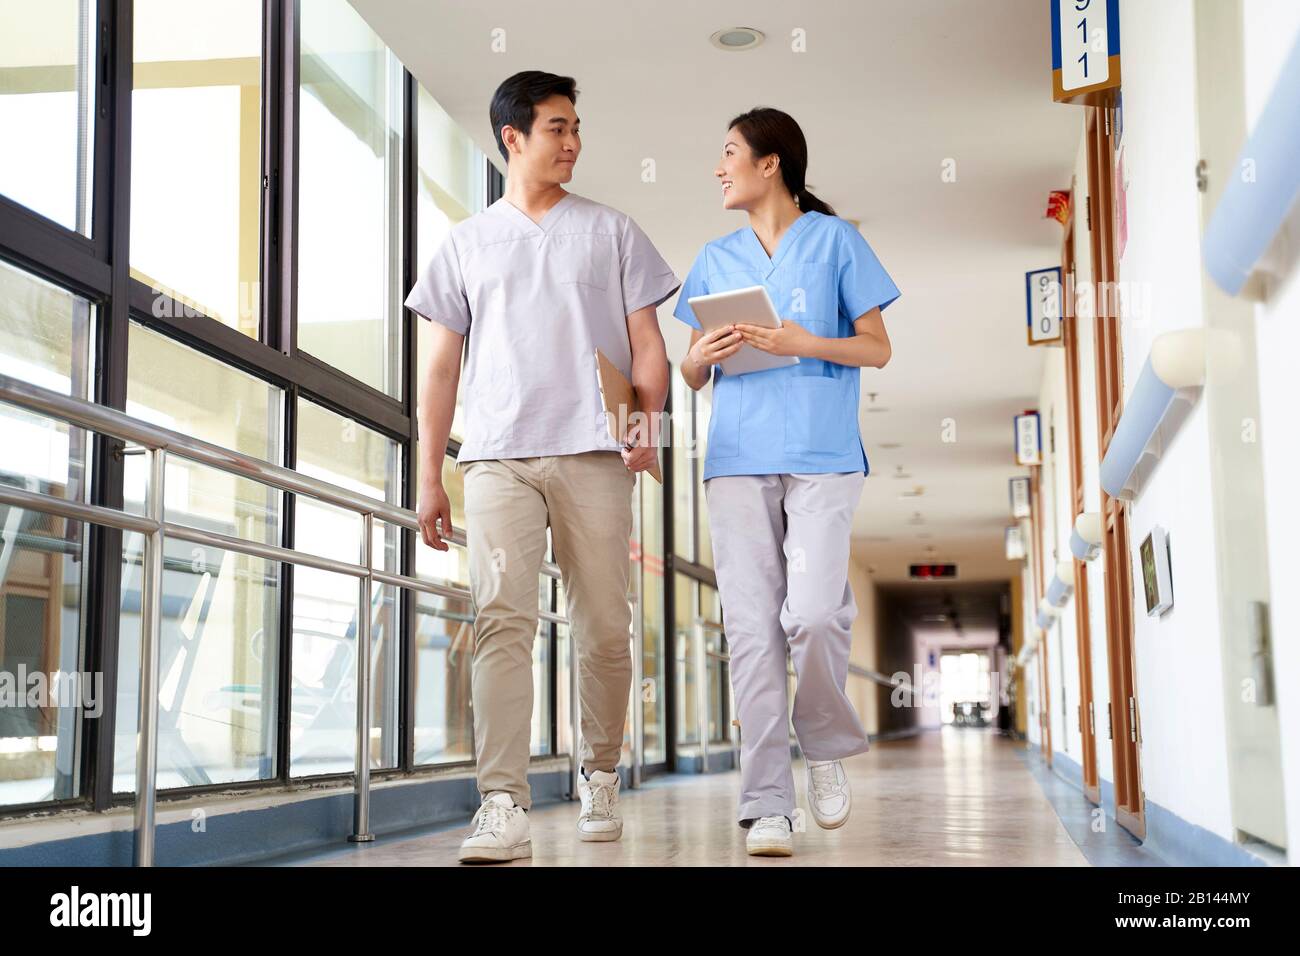 Fröhliche junge asiatische Physiotherapeuten, die im Flur des Pflegeheims spazieren gehen Stockfoto